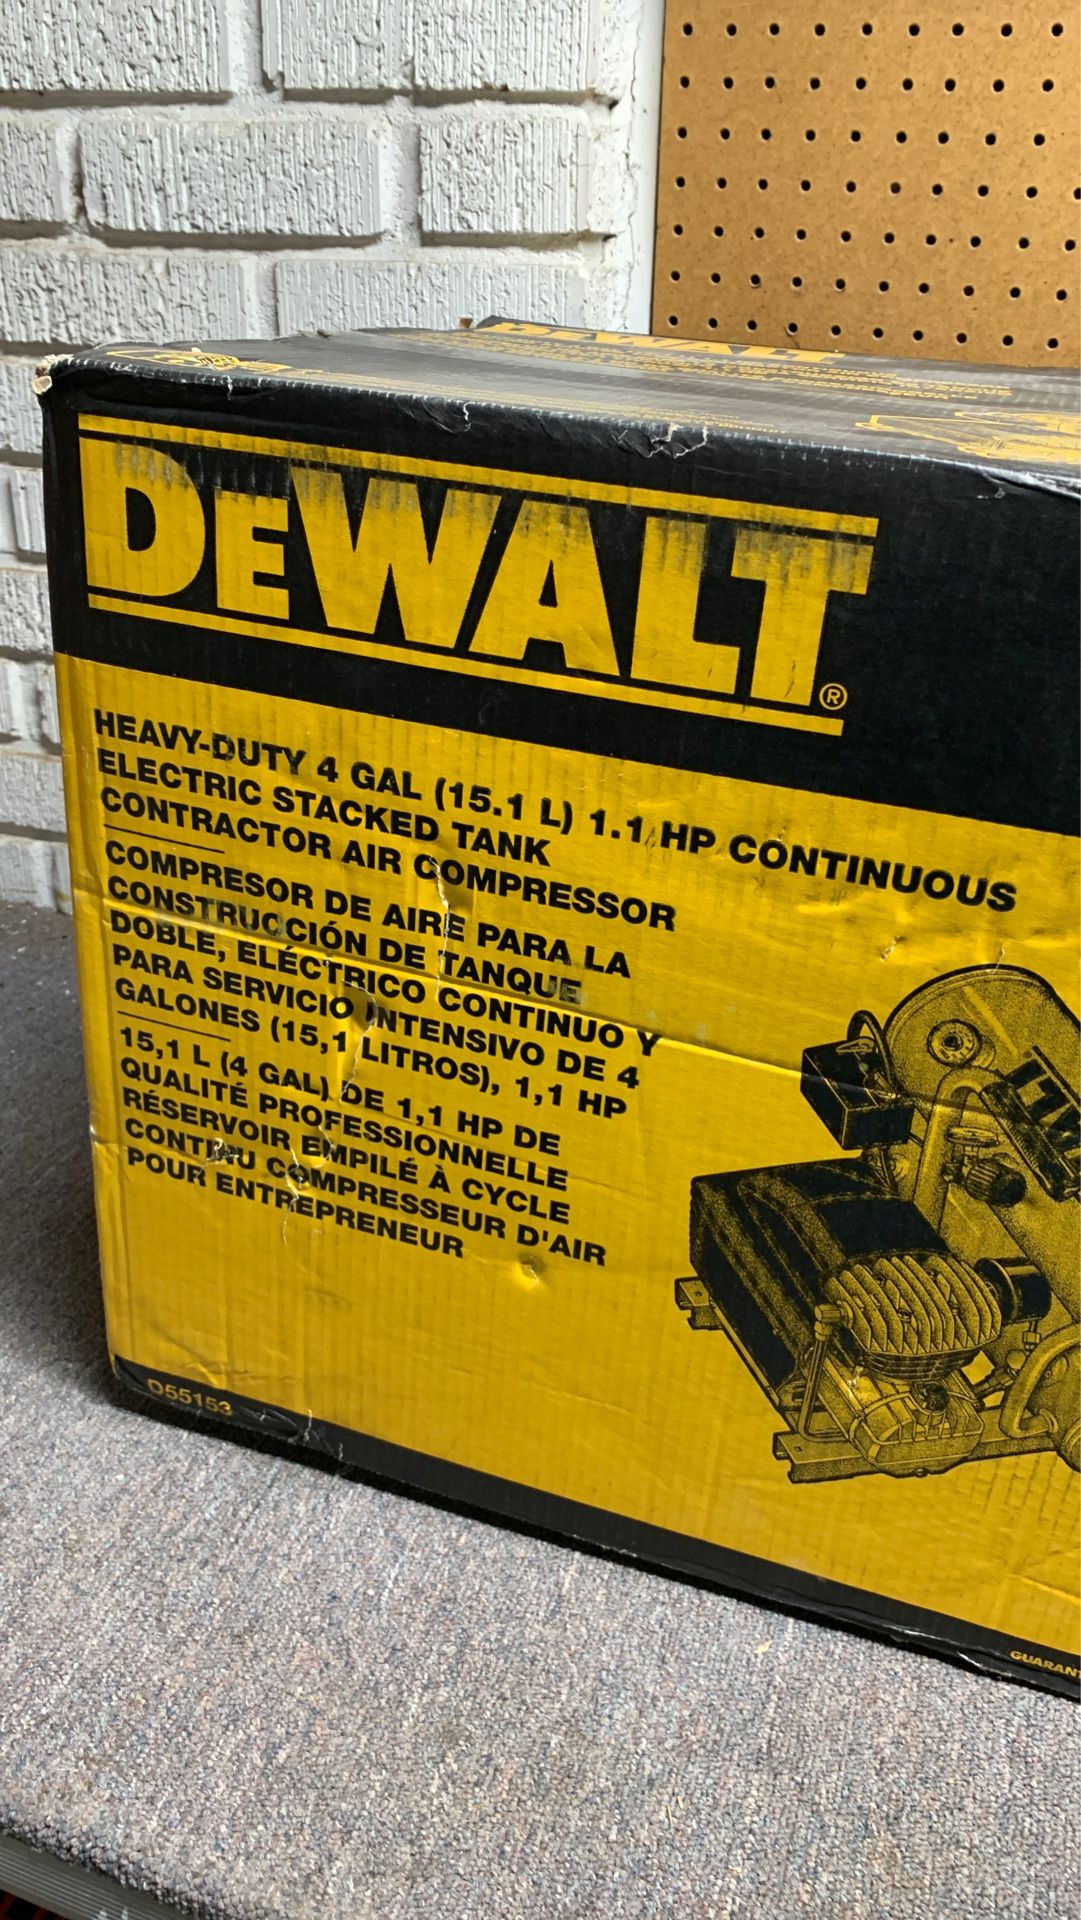 DeWalt Heavy Duty 4 Gal Contractor Air Compressor